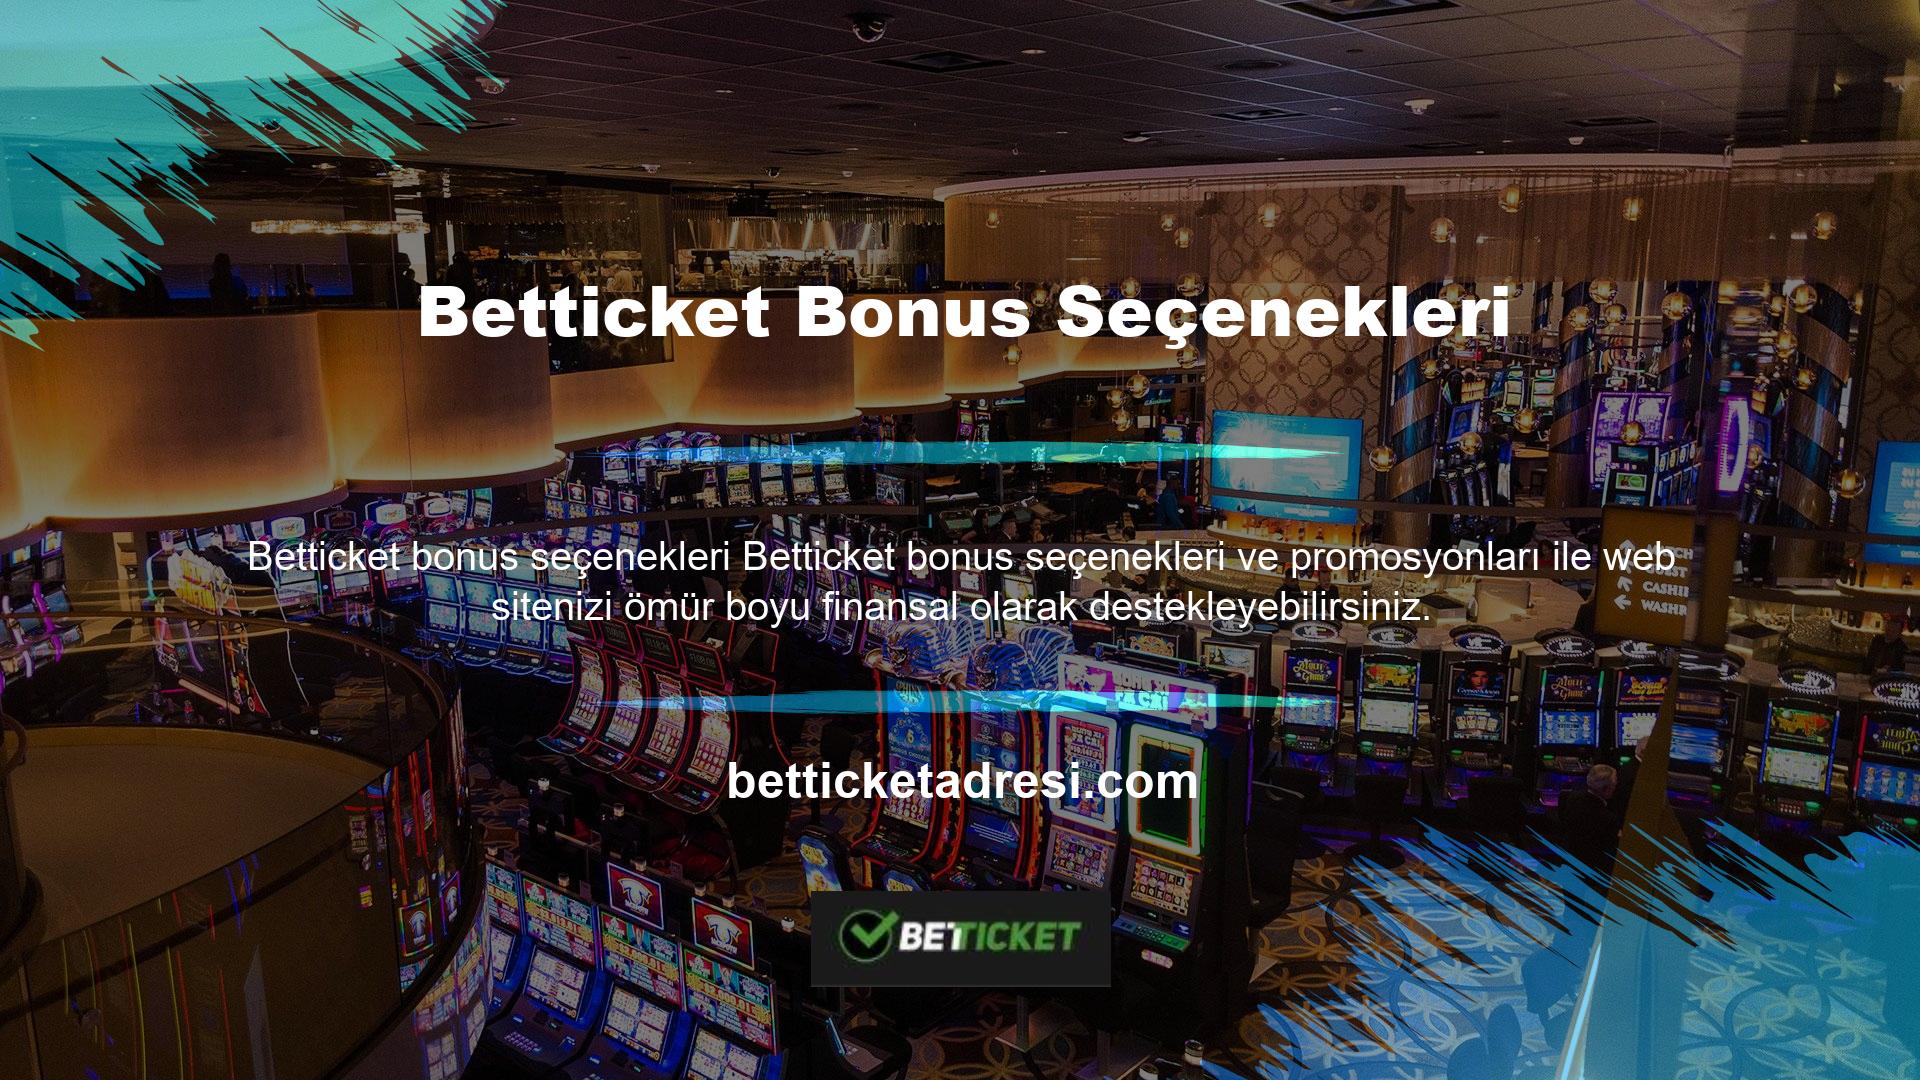 Betticket web siteleri aktif olarak online oyun ve casino sektörüne hizmet vermektedir